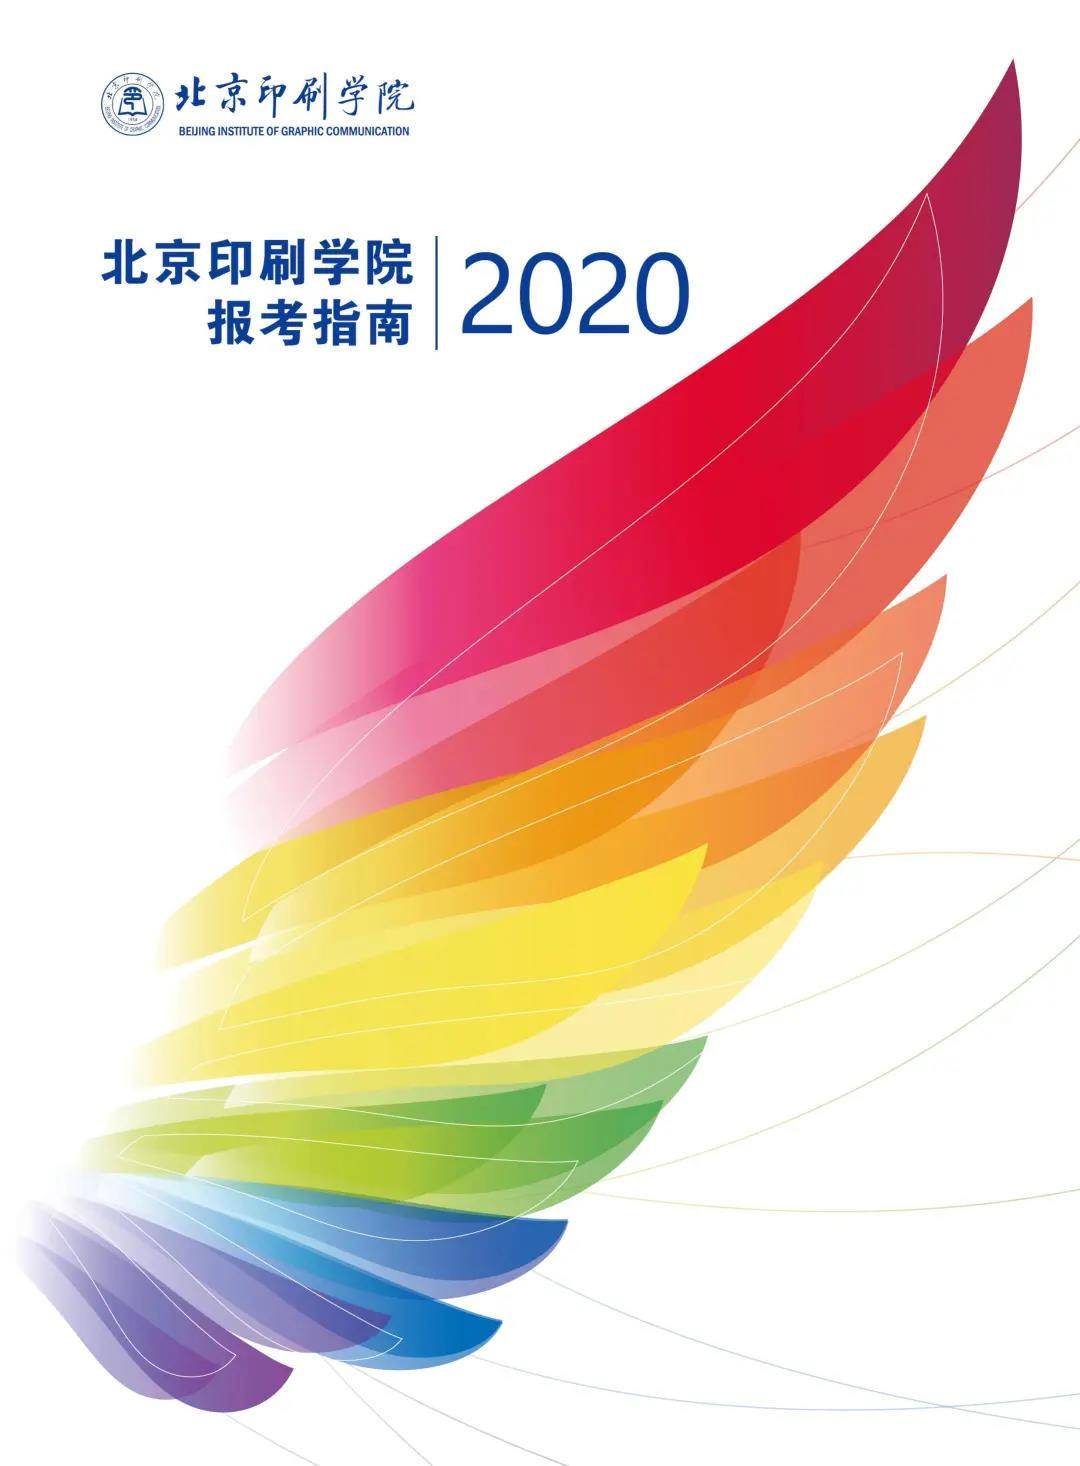 北京印刷学院2020年报考指南正式发布！